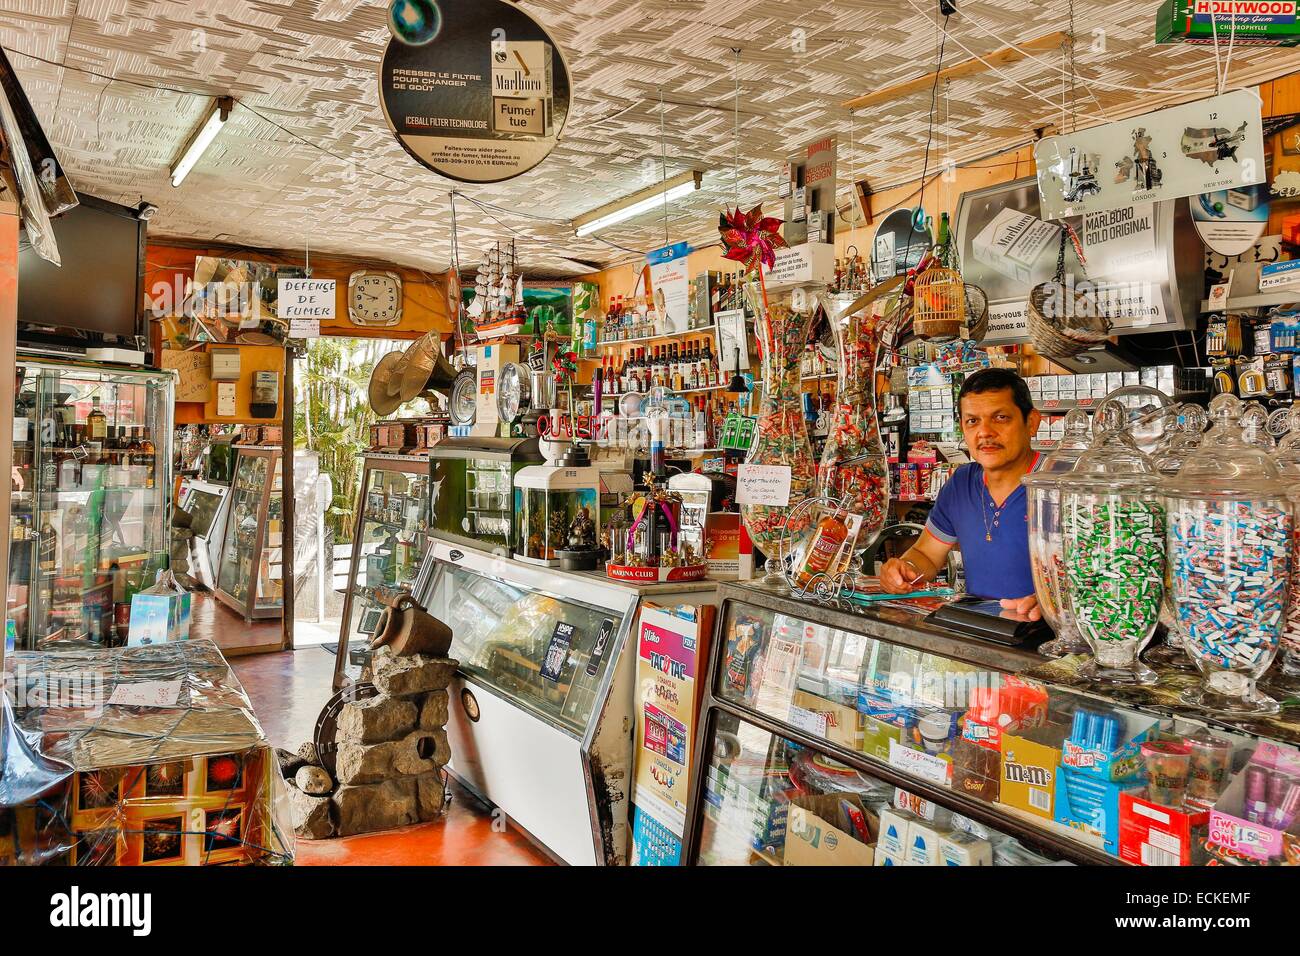 Francia, Isola di Reunion (dipartimento francese d' oltremare), Saint Anne, Santa Rosa, paesaggio architettonico, storico e culturale, commercio, vista orizzontale all'interno di un negozio di cinesi e il suo proprietario Foto Stock